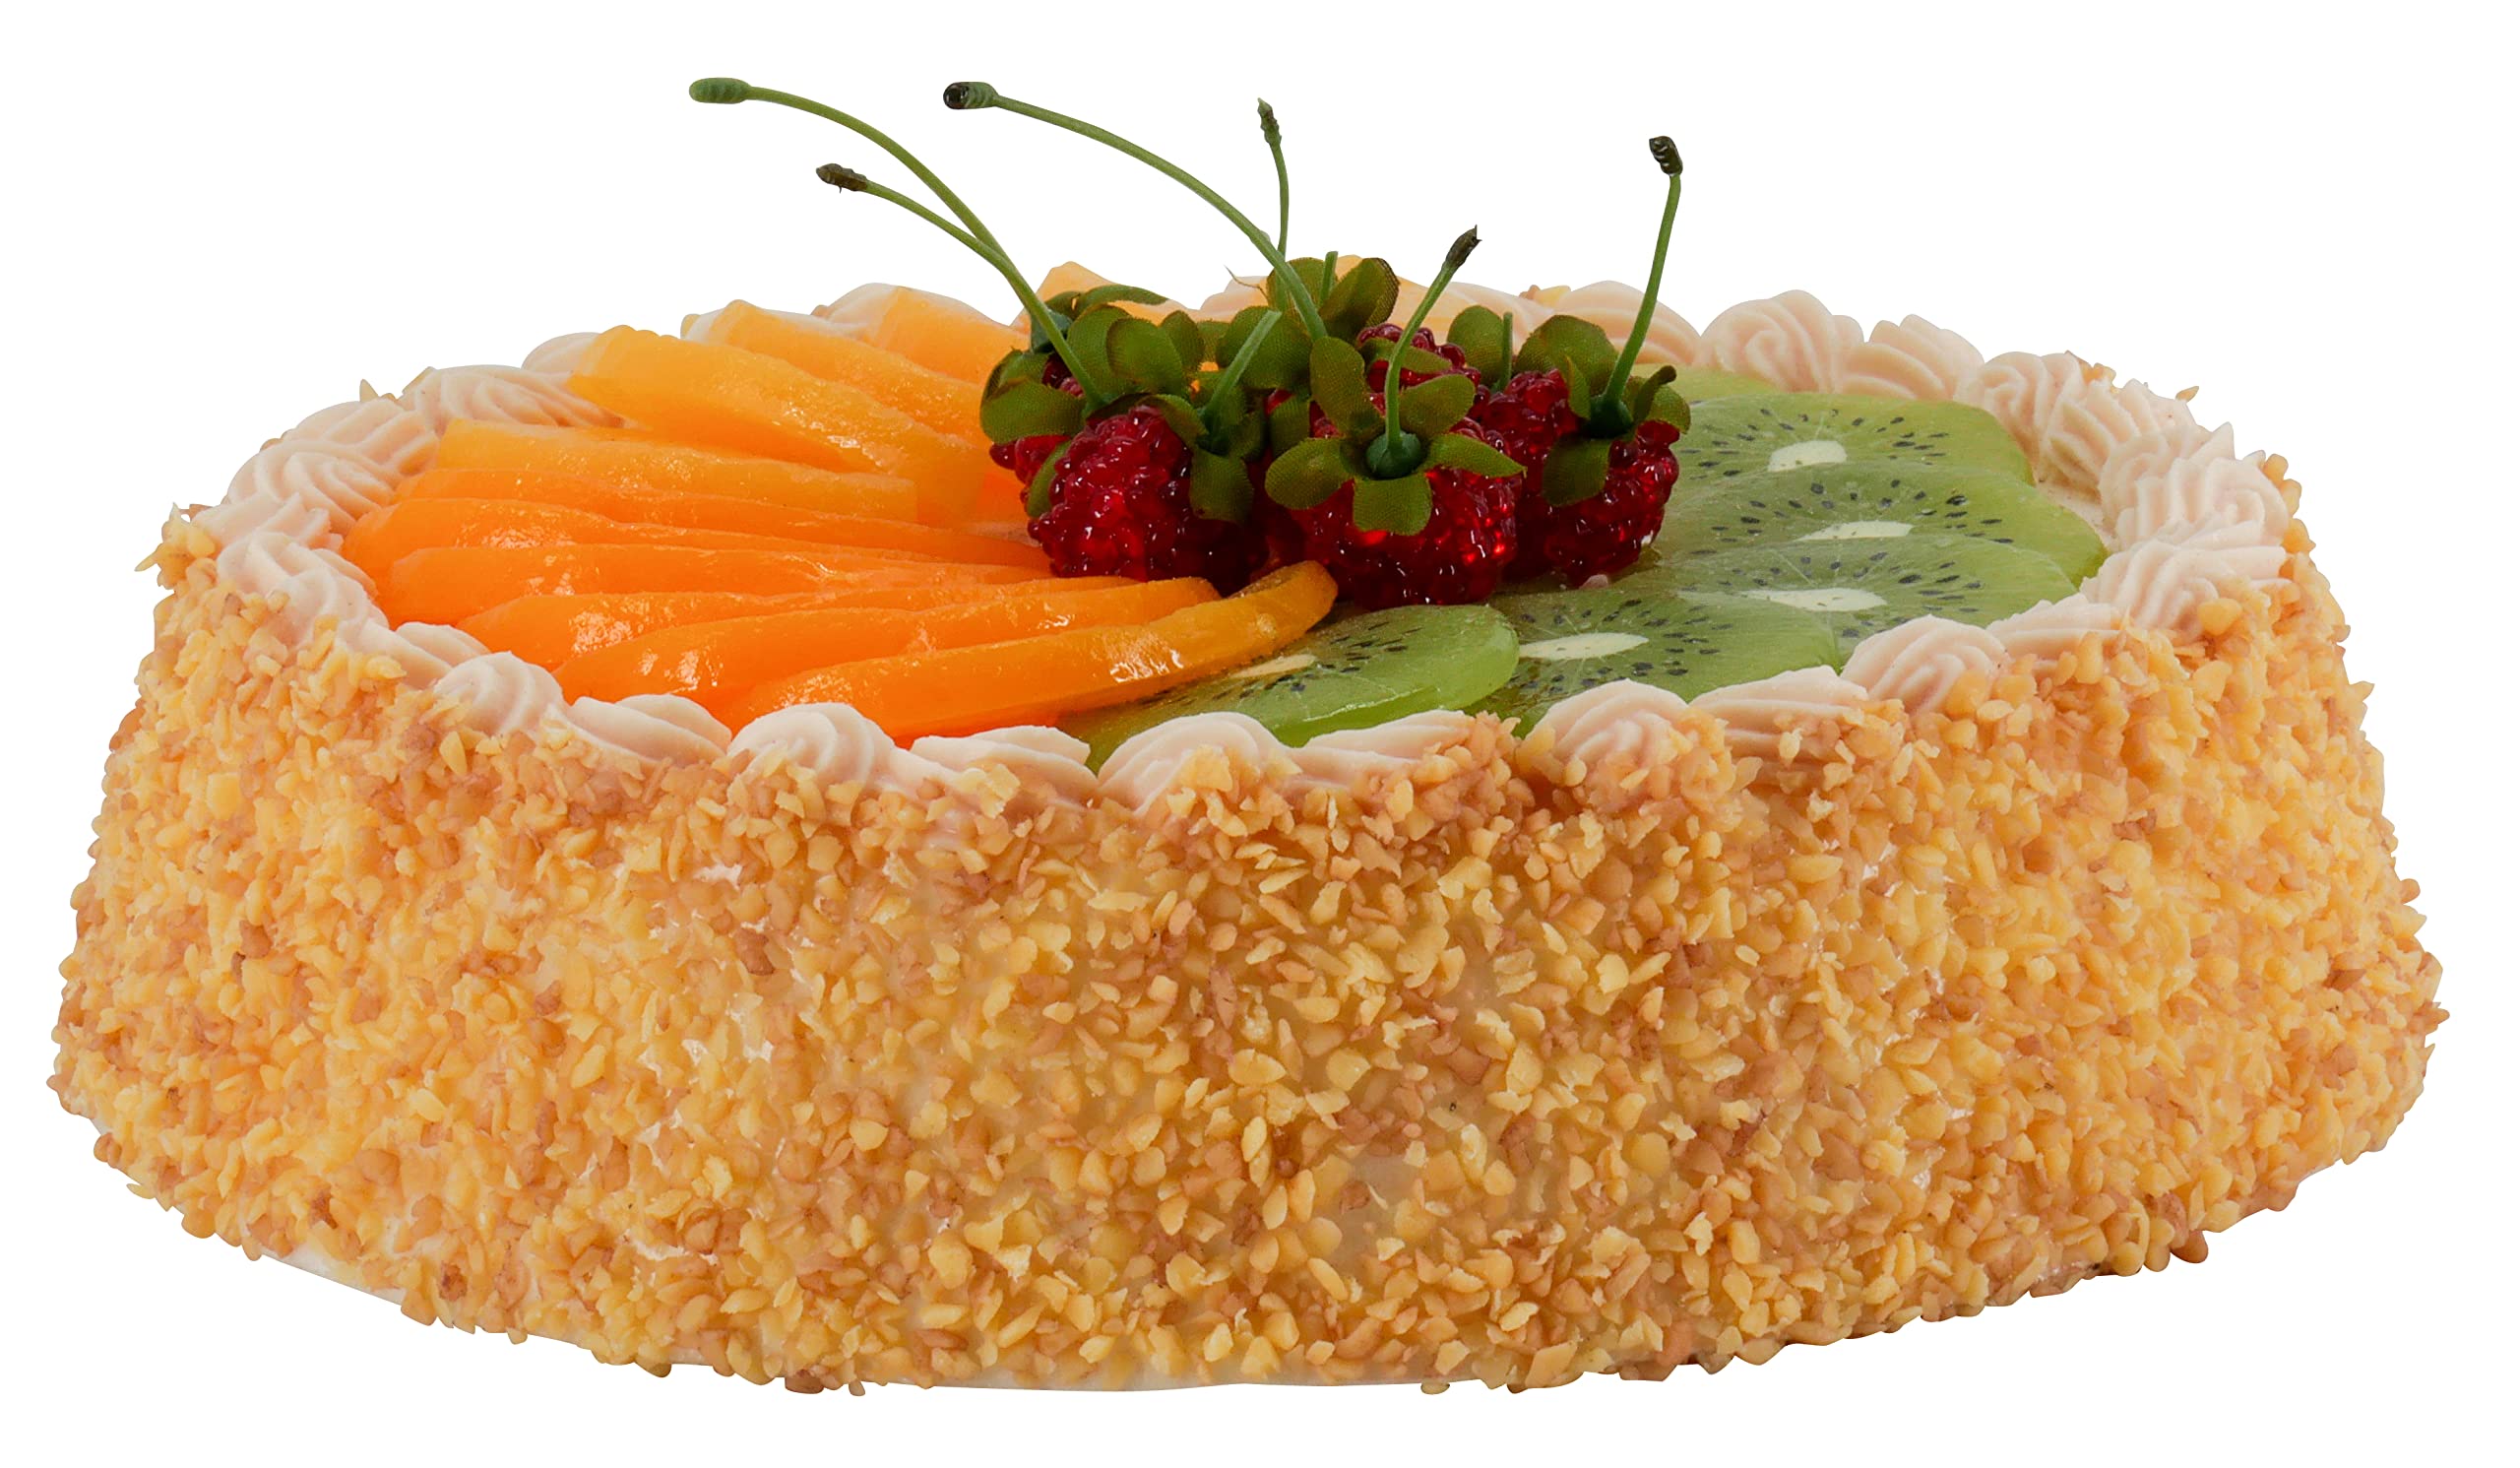 Klocke Dekorationsbedarf Naturgetreue Lebensmittel Attrappe – Künstliche Tortenartikel – Food Dummy/Plastikessen - Dekoration (Torte Obst - 22x6 cm)